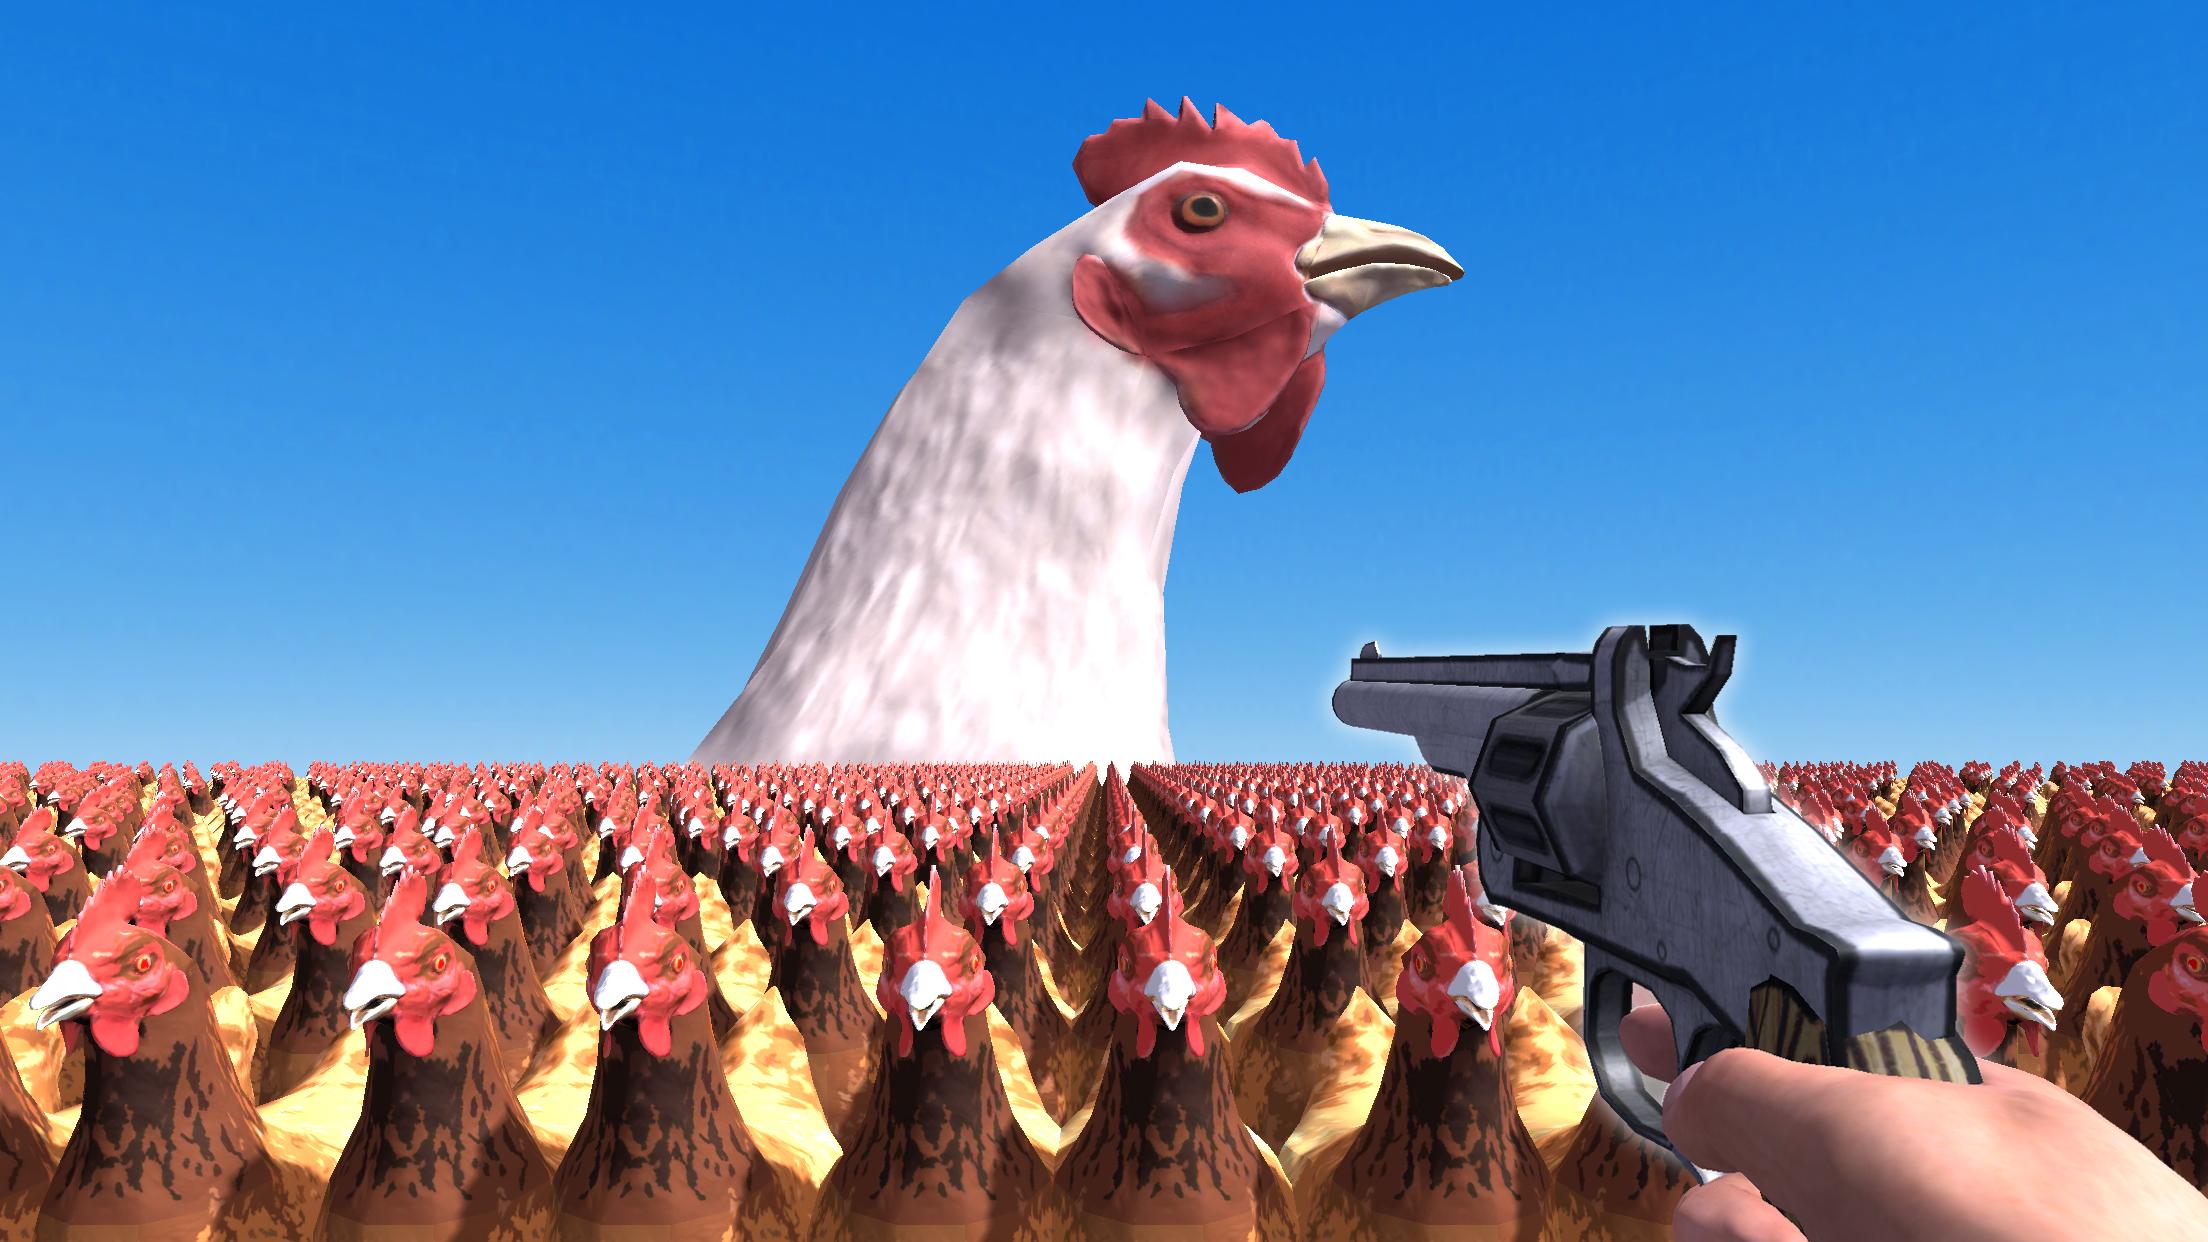 Чикен 5 игра. Курица с оружием. Игра стрелять в куриц из ружья.